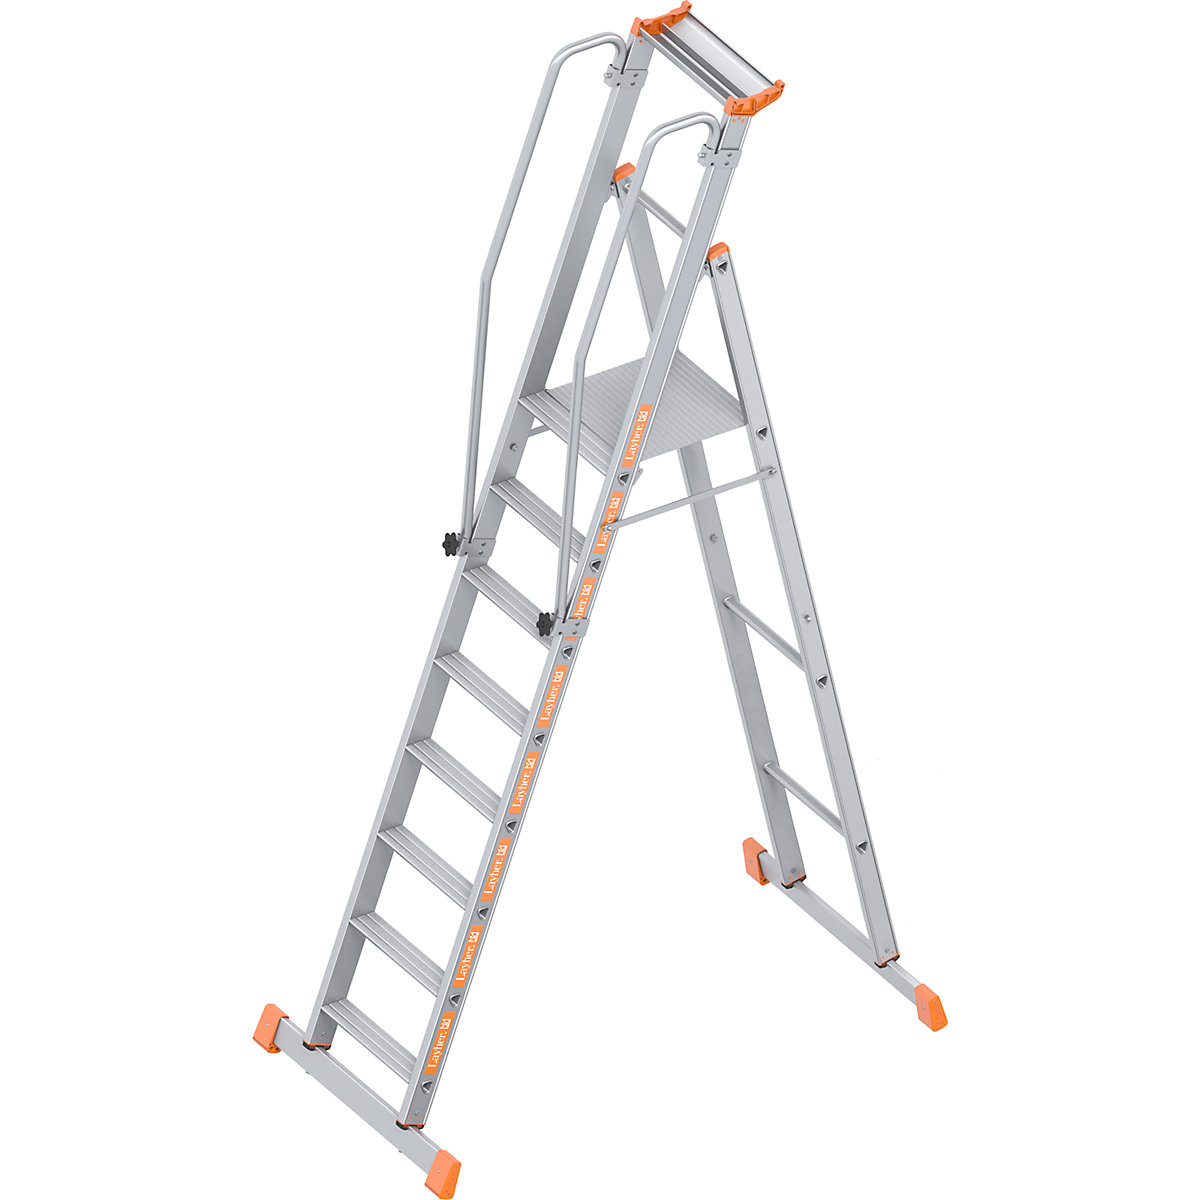 Aluminijske ljestve s podestom – Layher, penjanje s jedne strane, s mogućnošću sklapanja, 8 stepenica